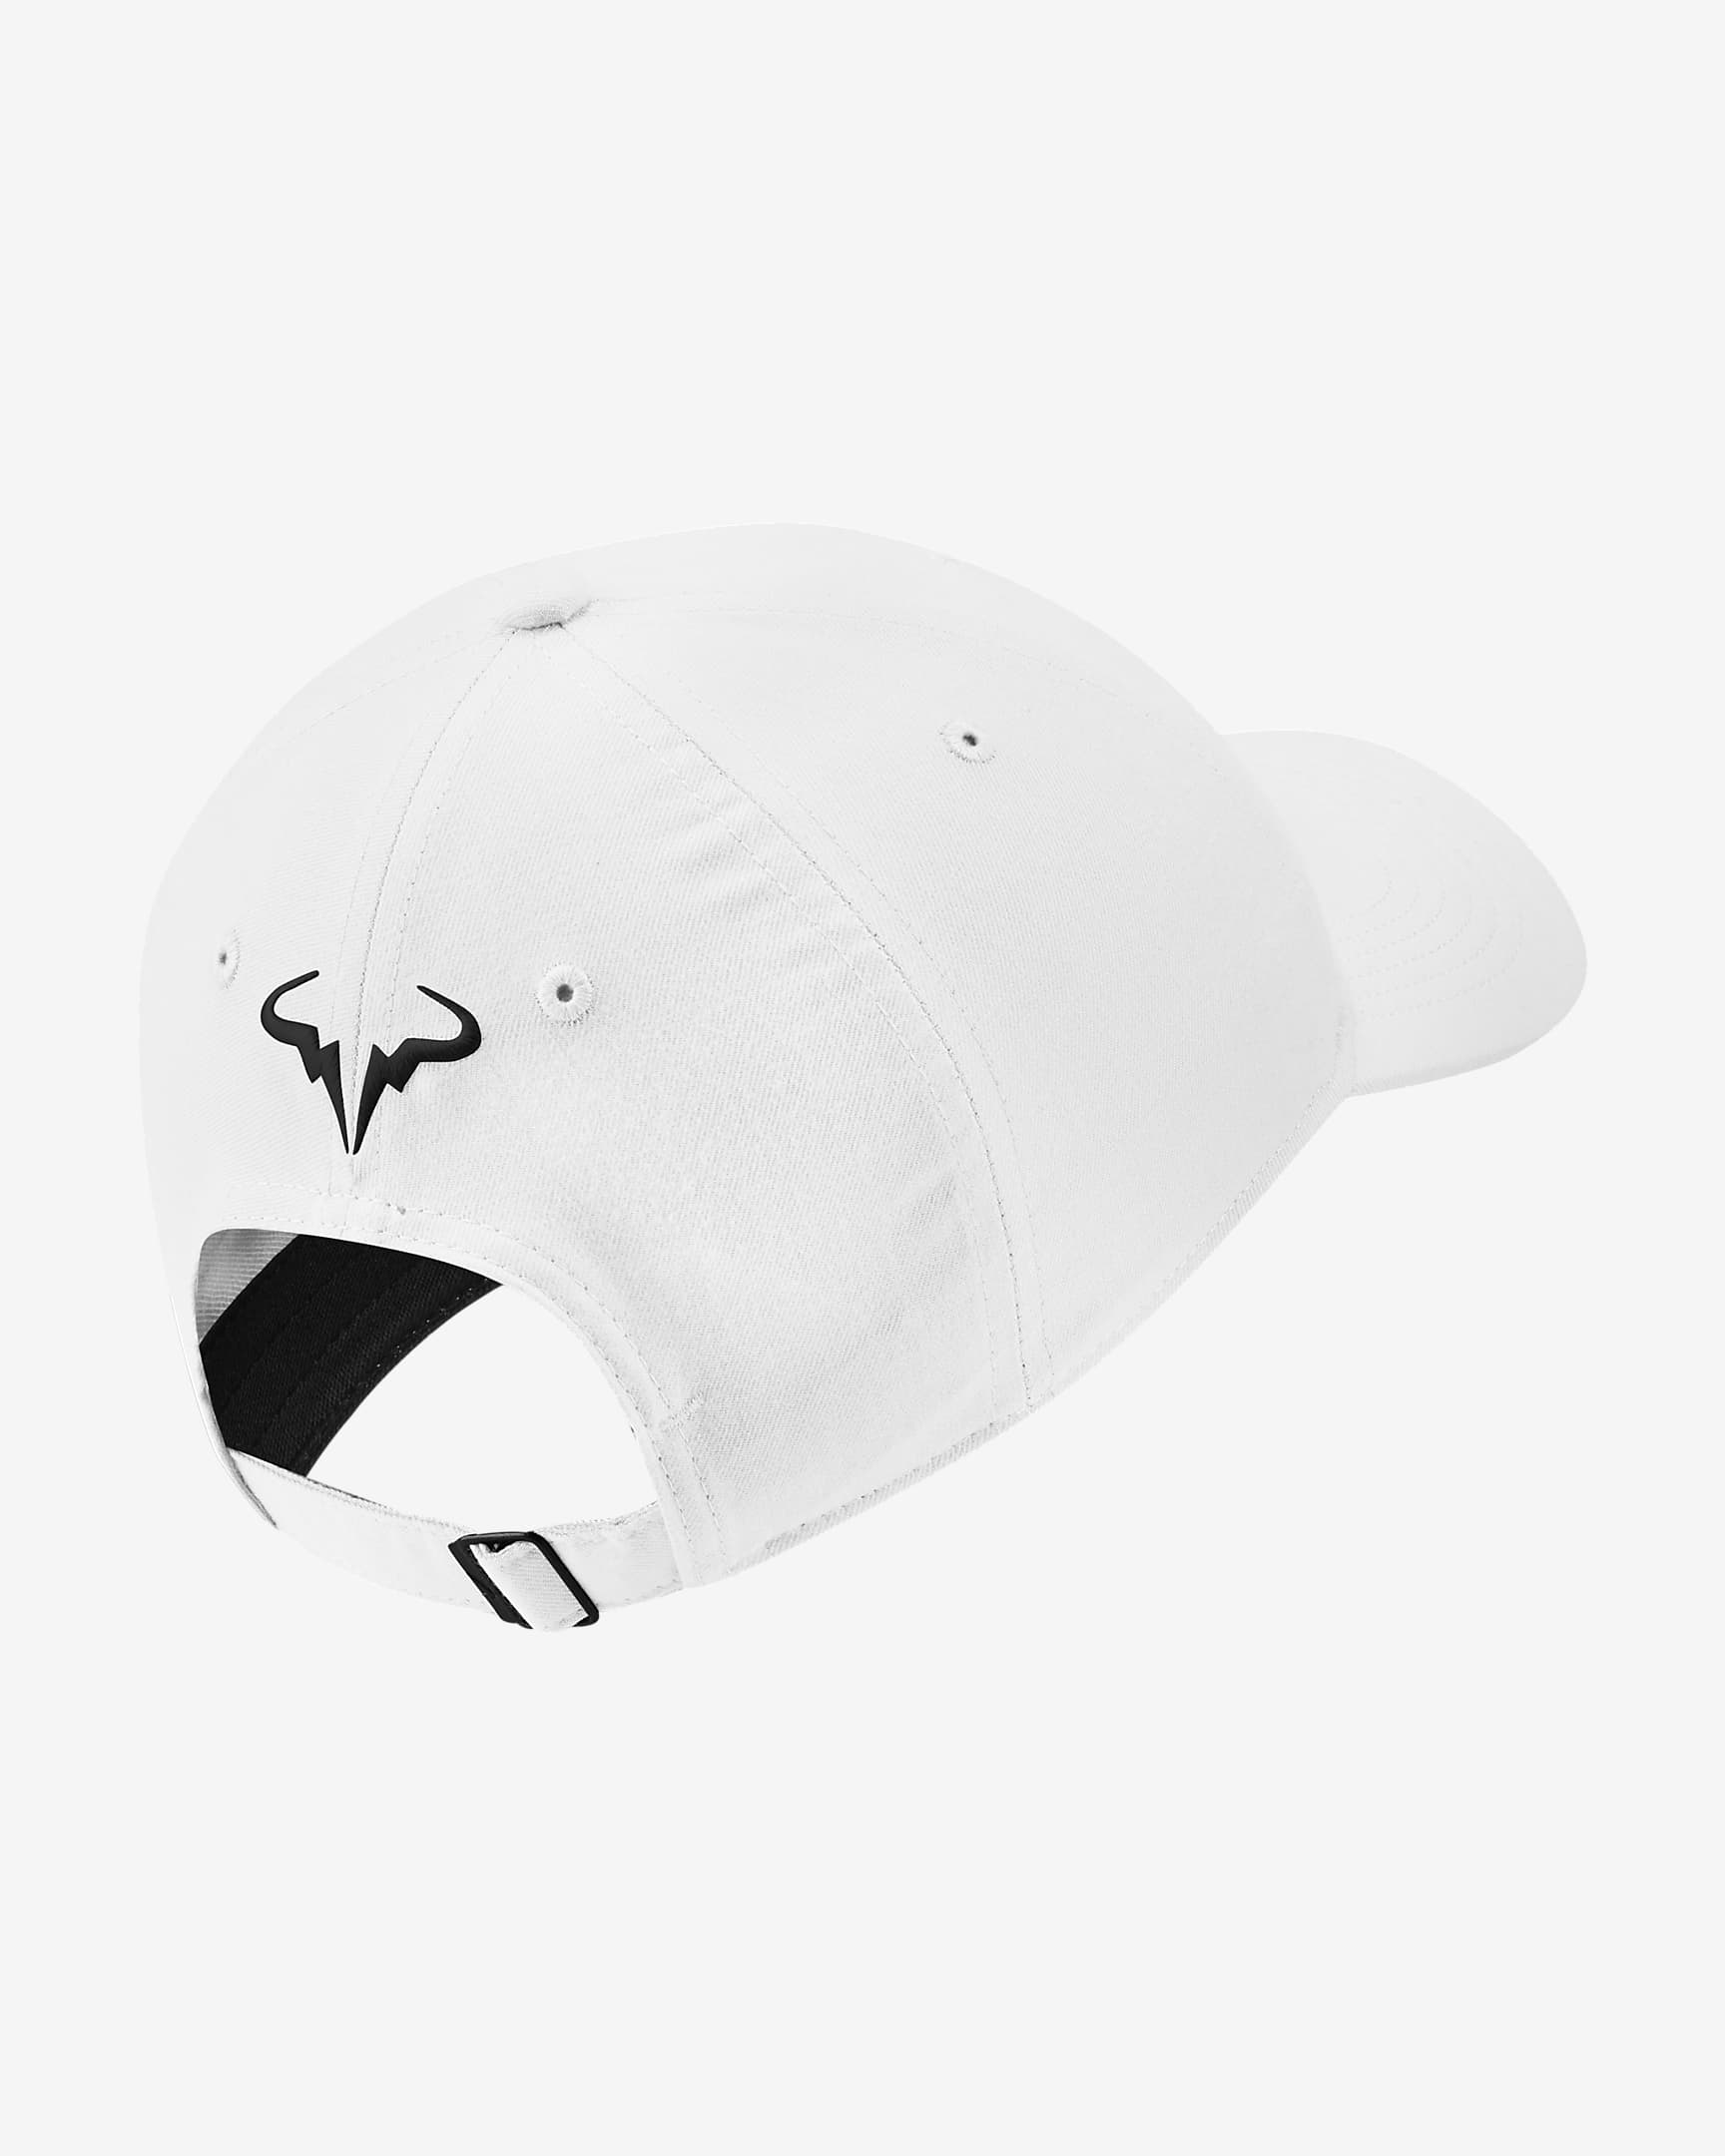 Nike Rafa Aerobill Cap